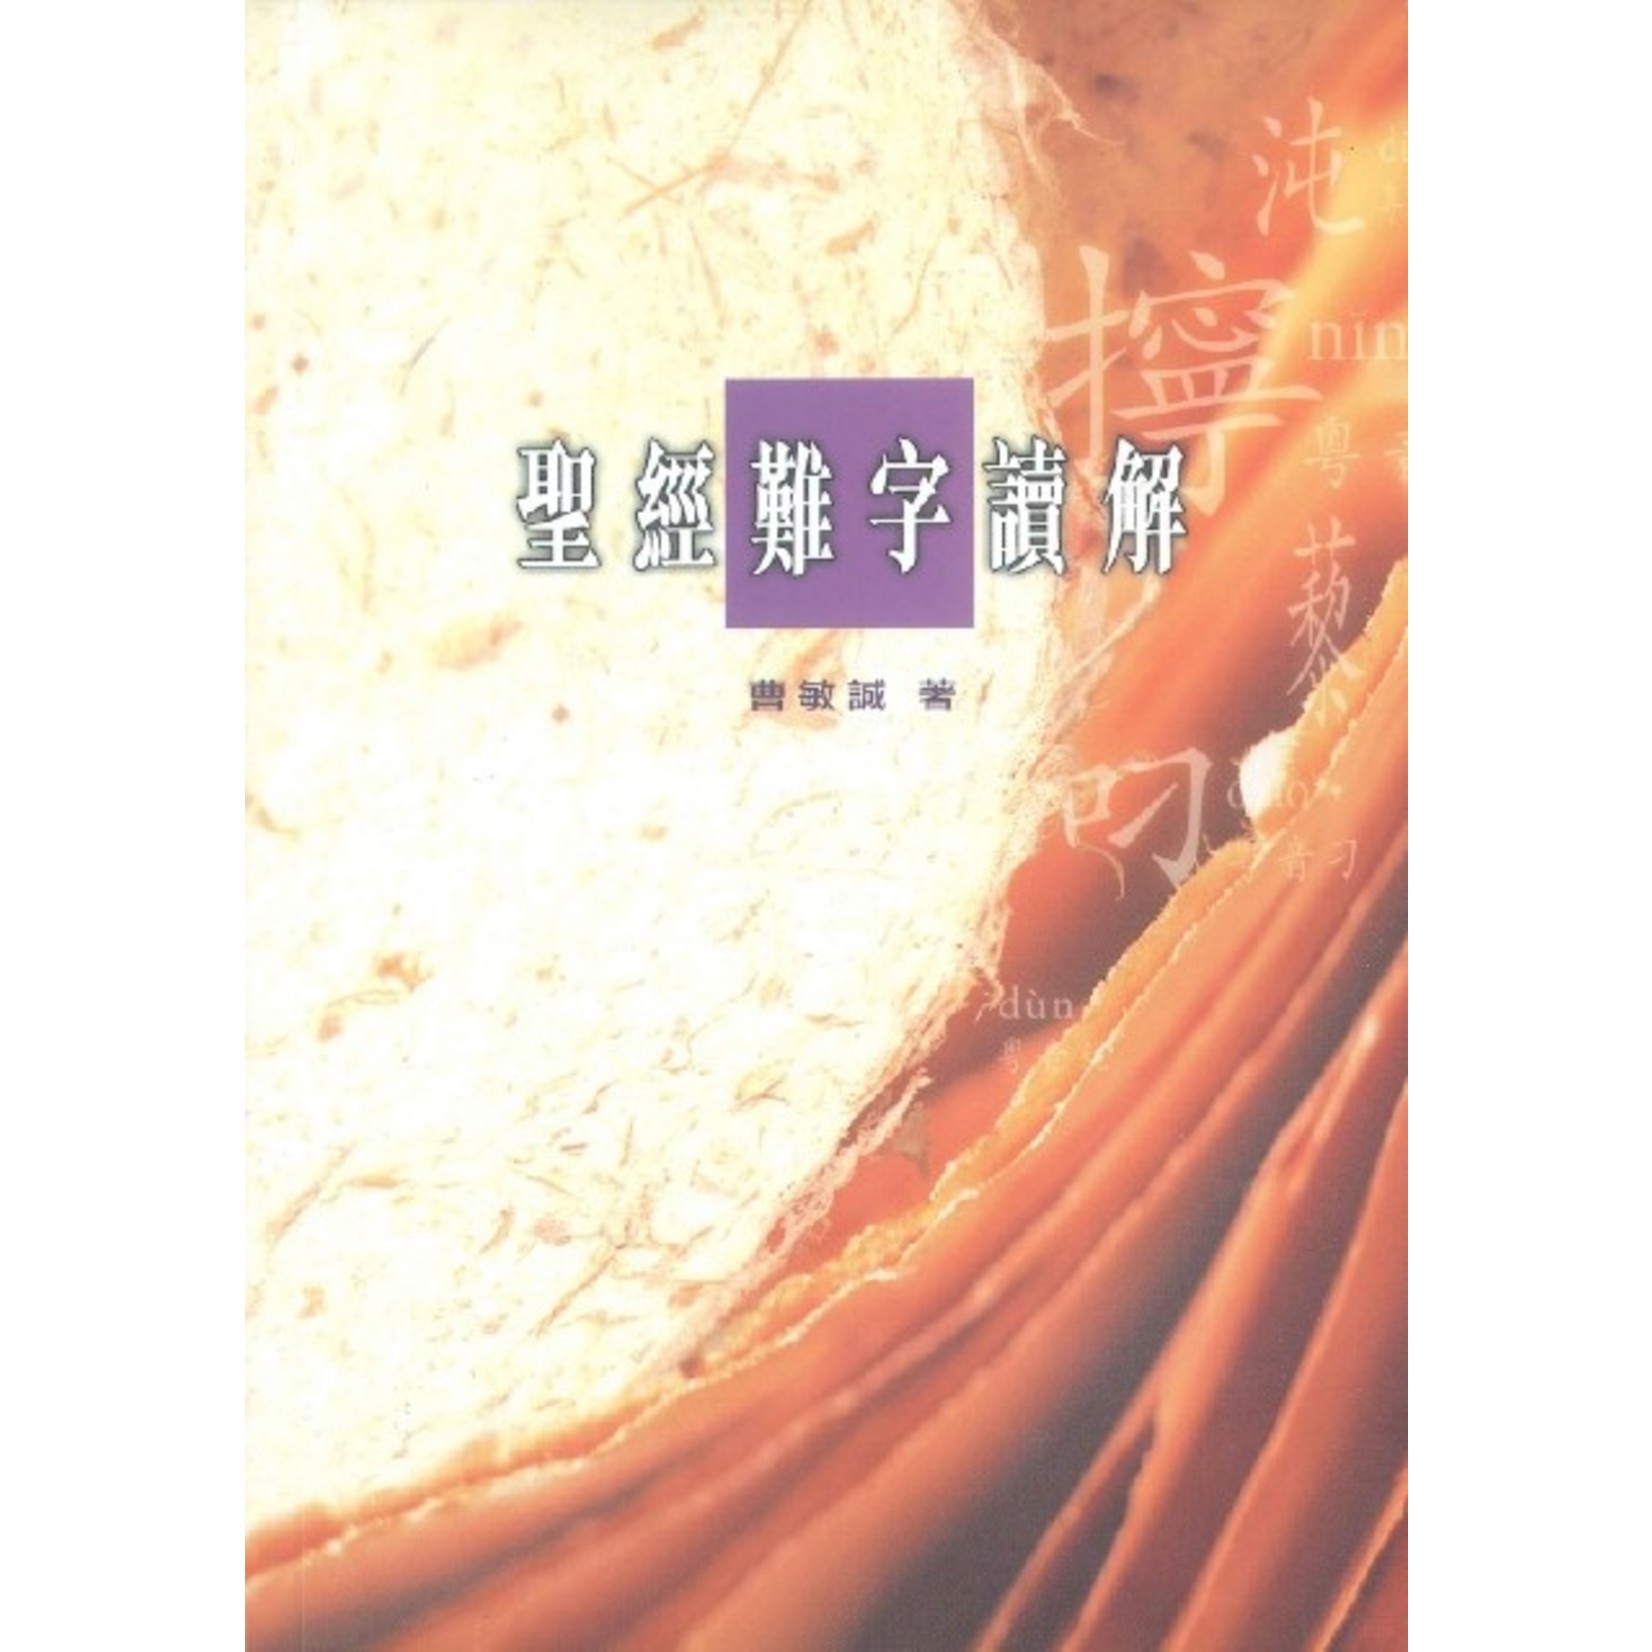 基督教文藝(香港) Chinese Christian Literature Council 聖經難字讀解